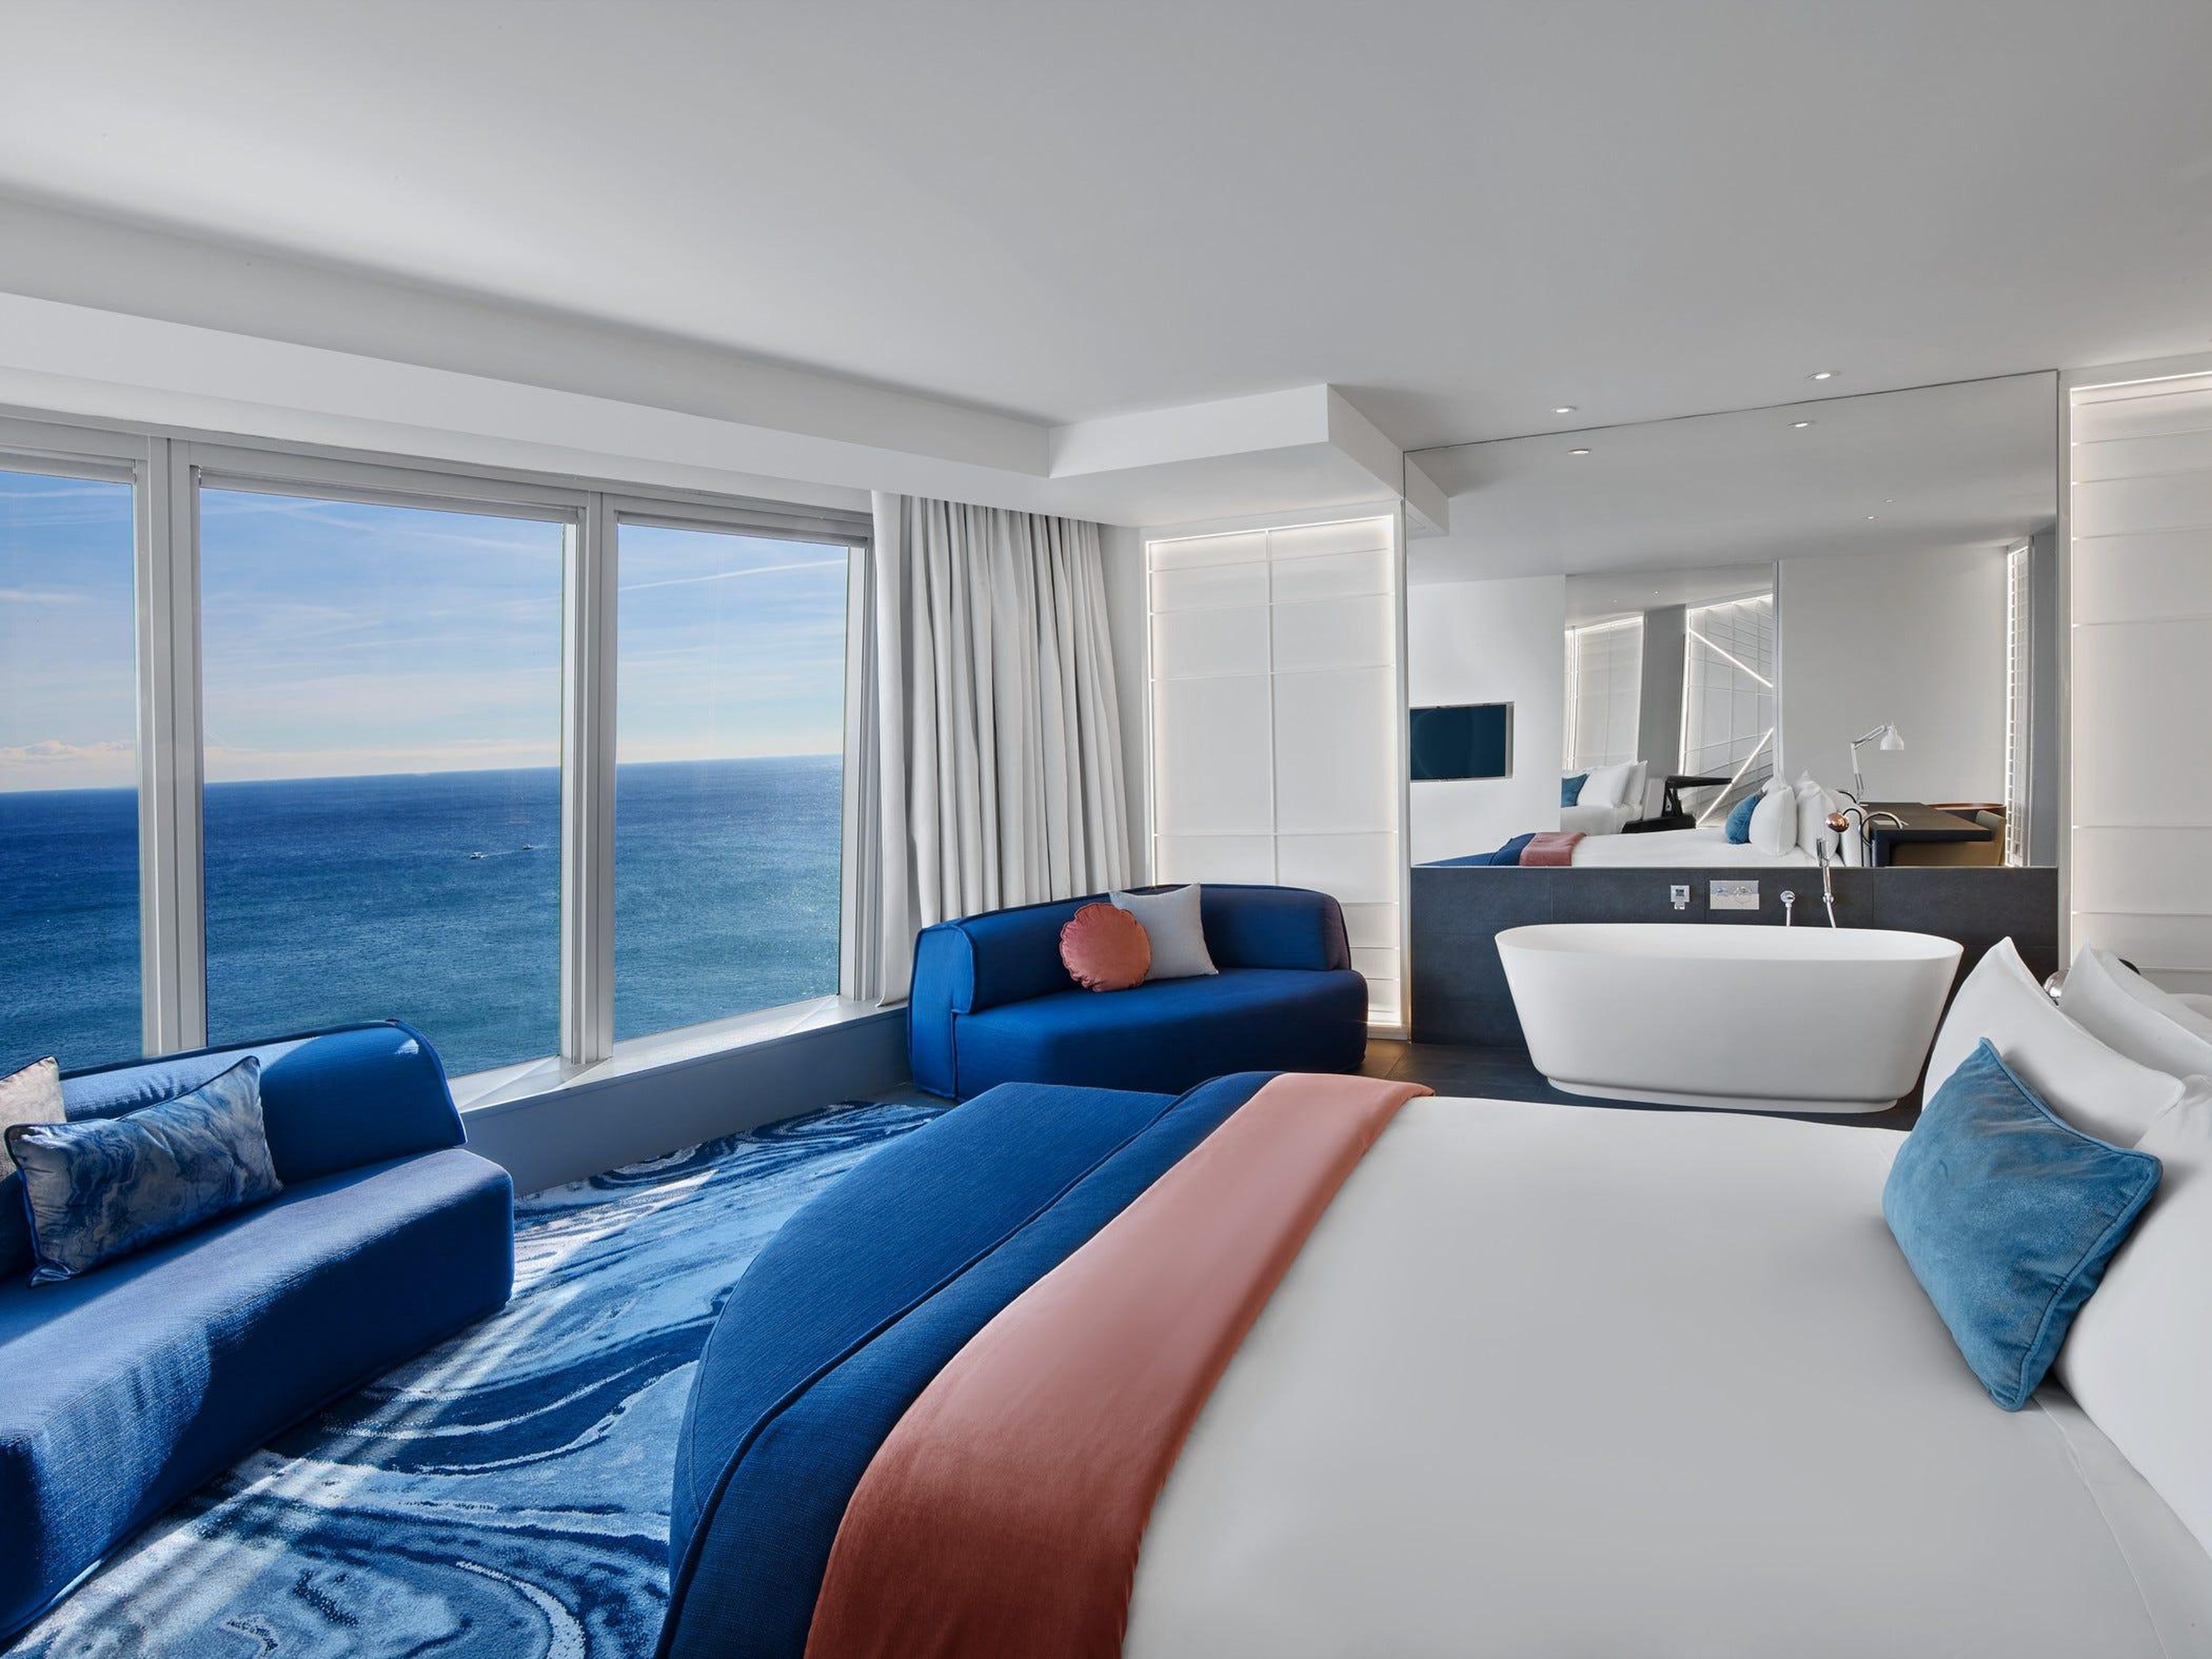 Las lujosas habitaciones tienen vistas al mar.